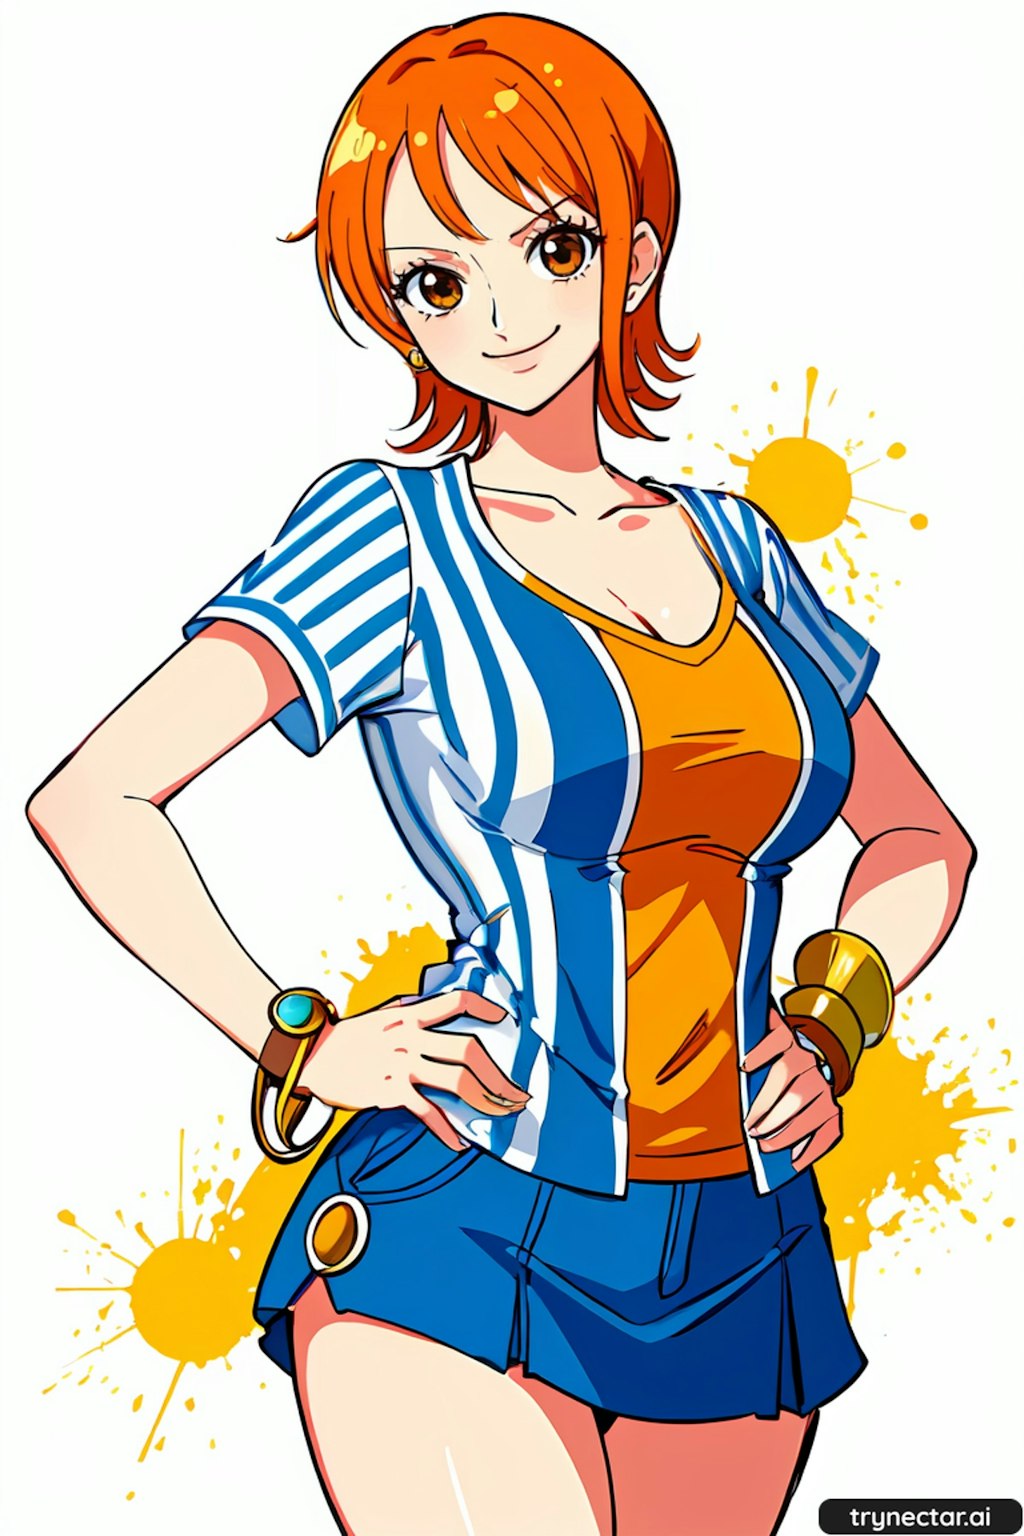 Nami | One Piece